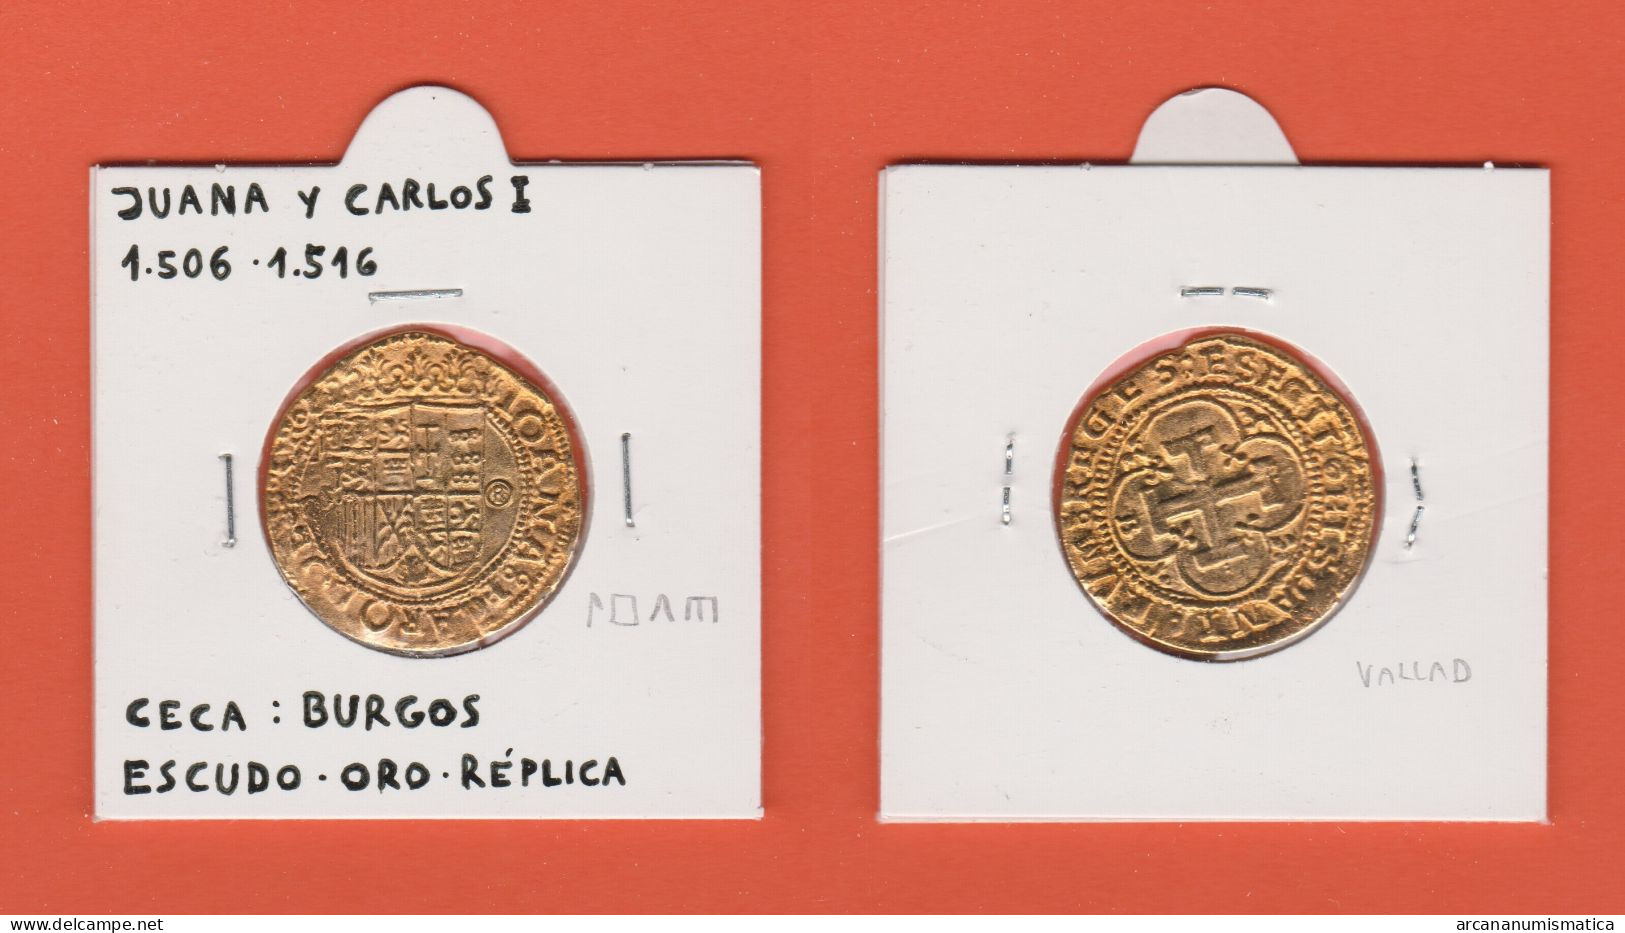 CARLOS I Y JUANA LA LOCA 1.535-1.555 ESCUDO - ORO  Ceca : Burgos  Réplica   DL-13.403 - Counterfeits